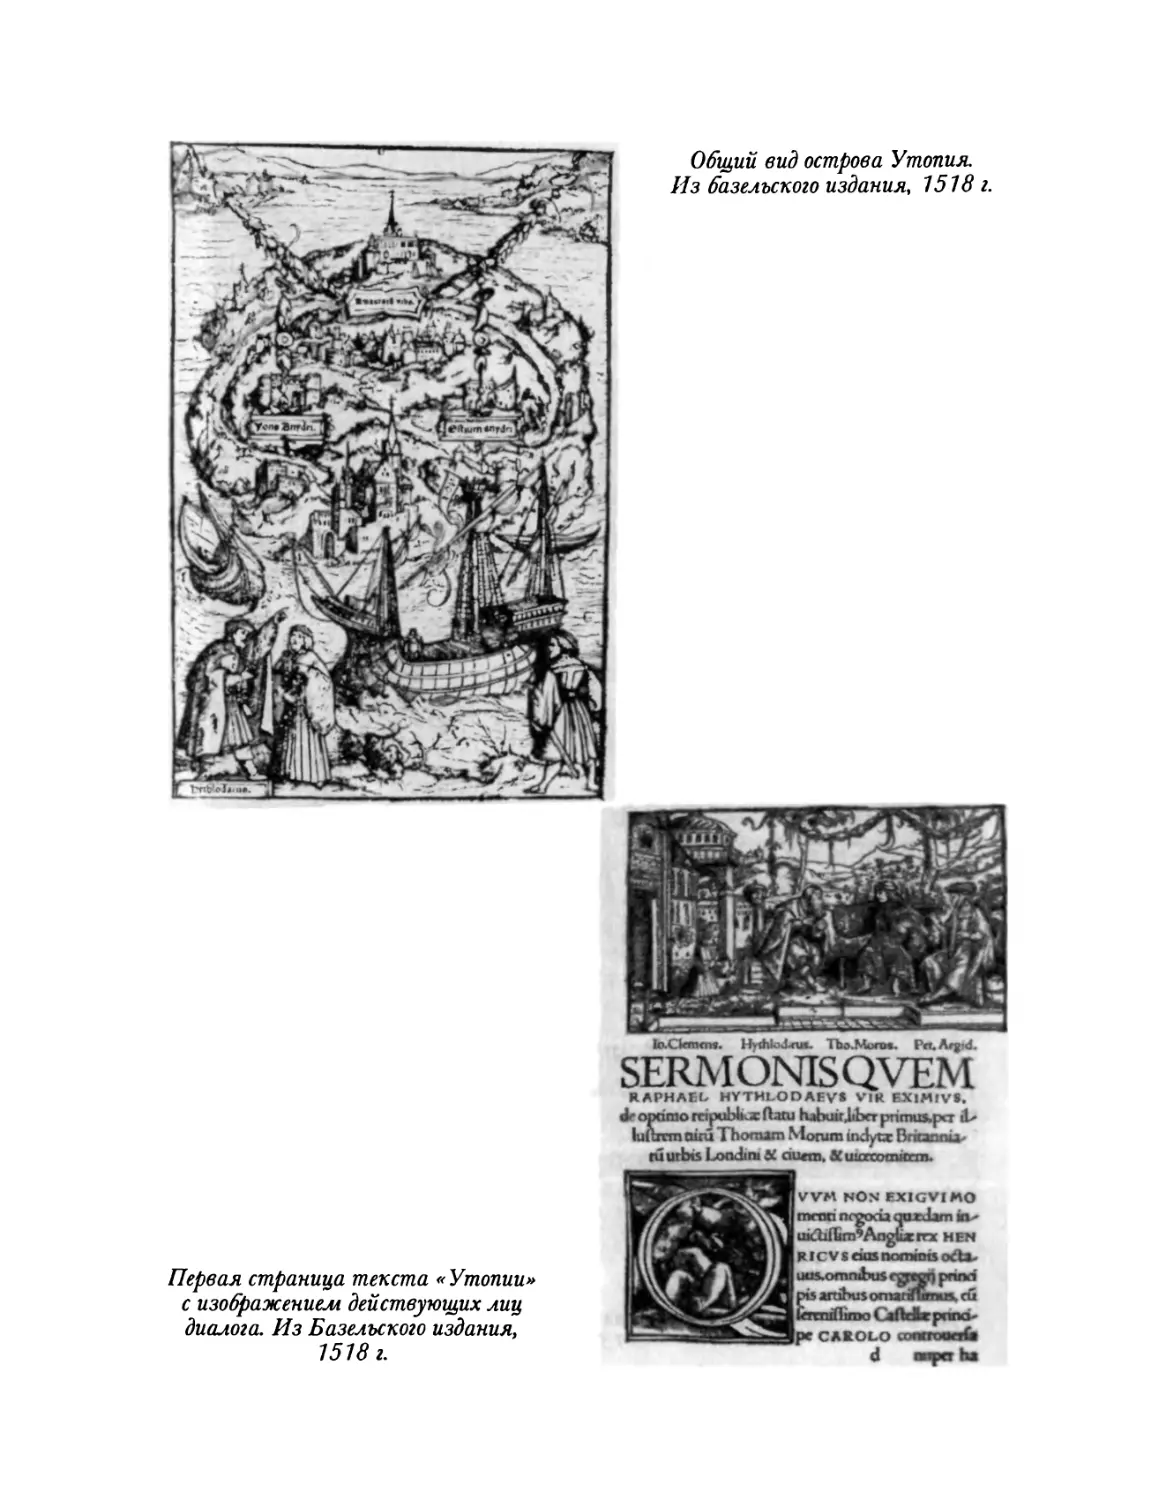 Утопийский алфавит. Страница из базелыкого издания Иоганна Фробена, 1518 г.